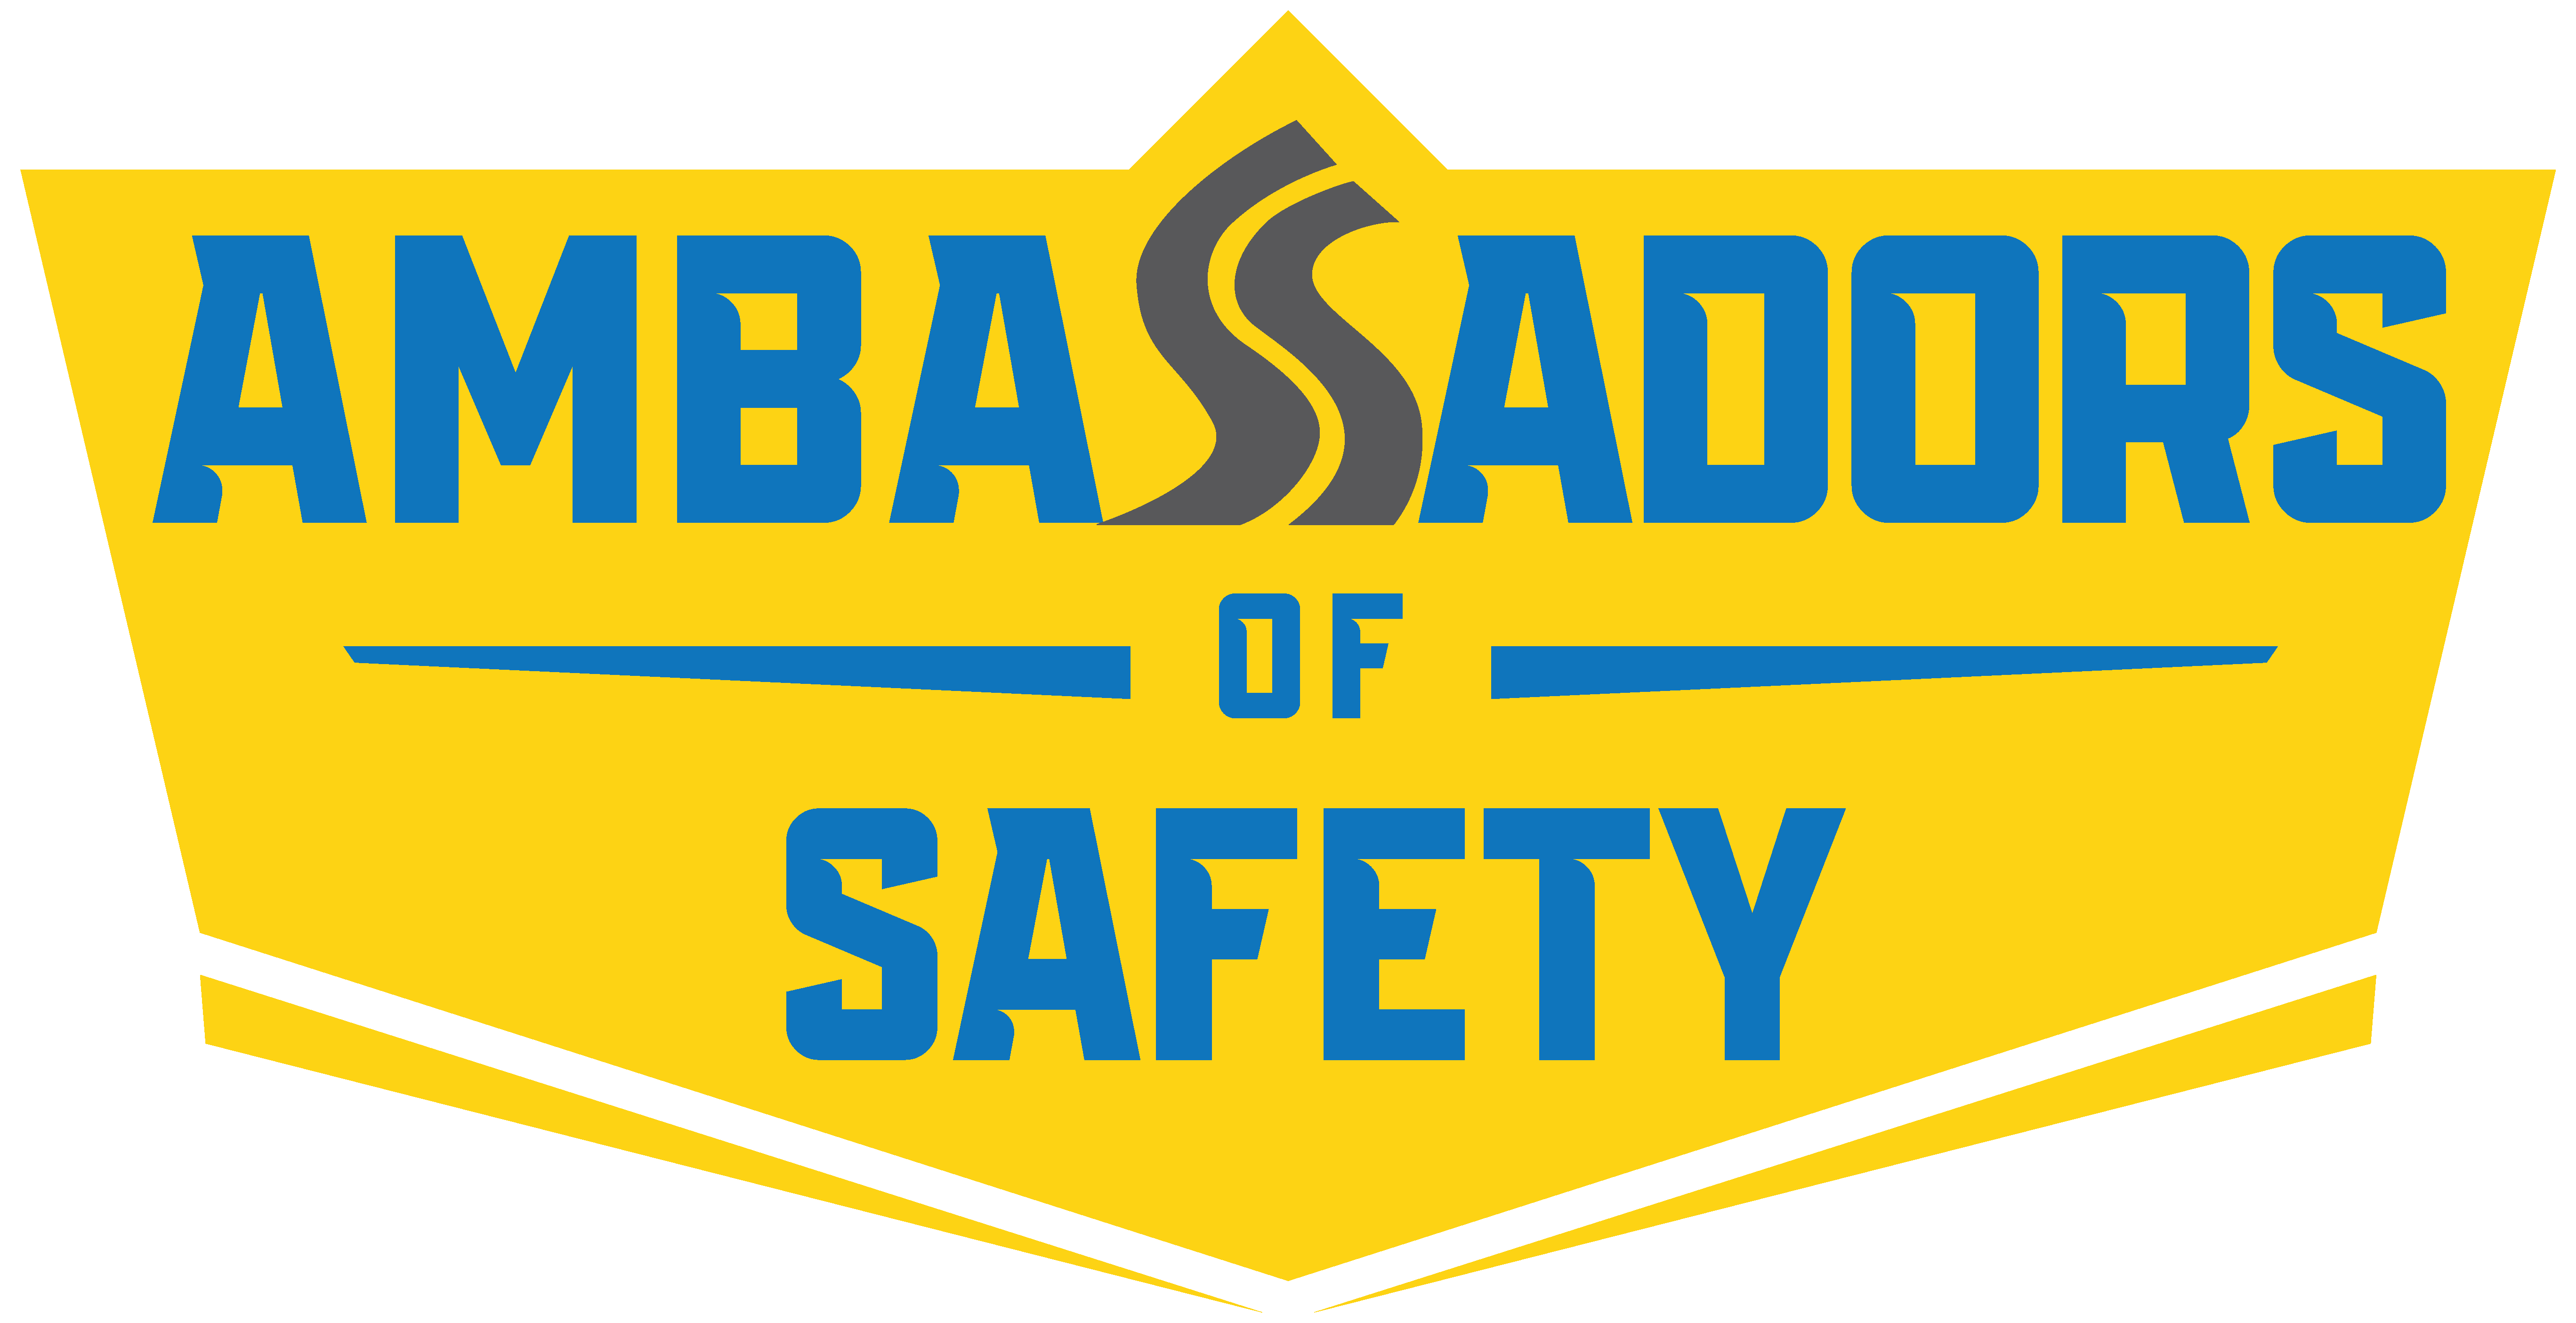 Ambassadors of Safety logo